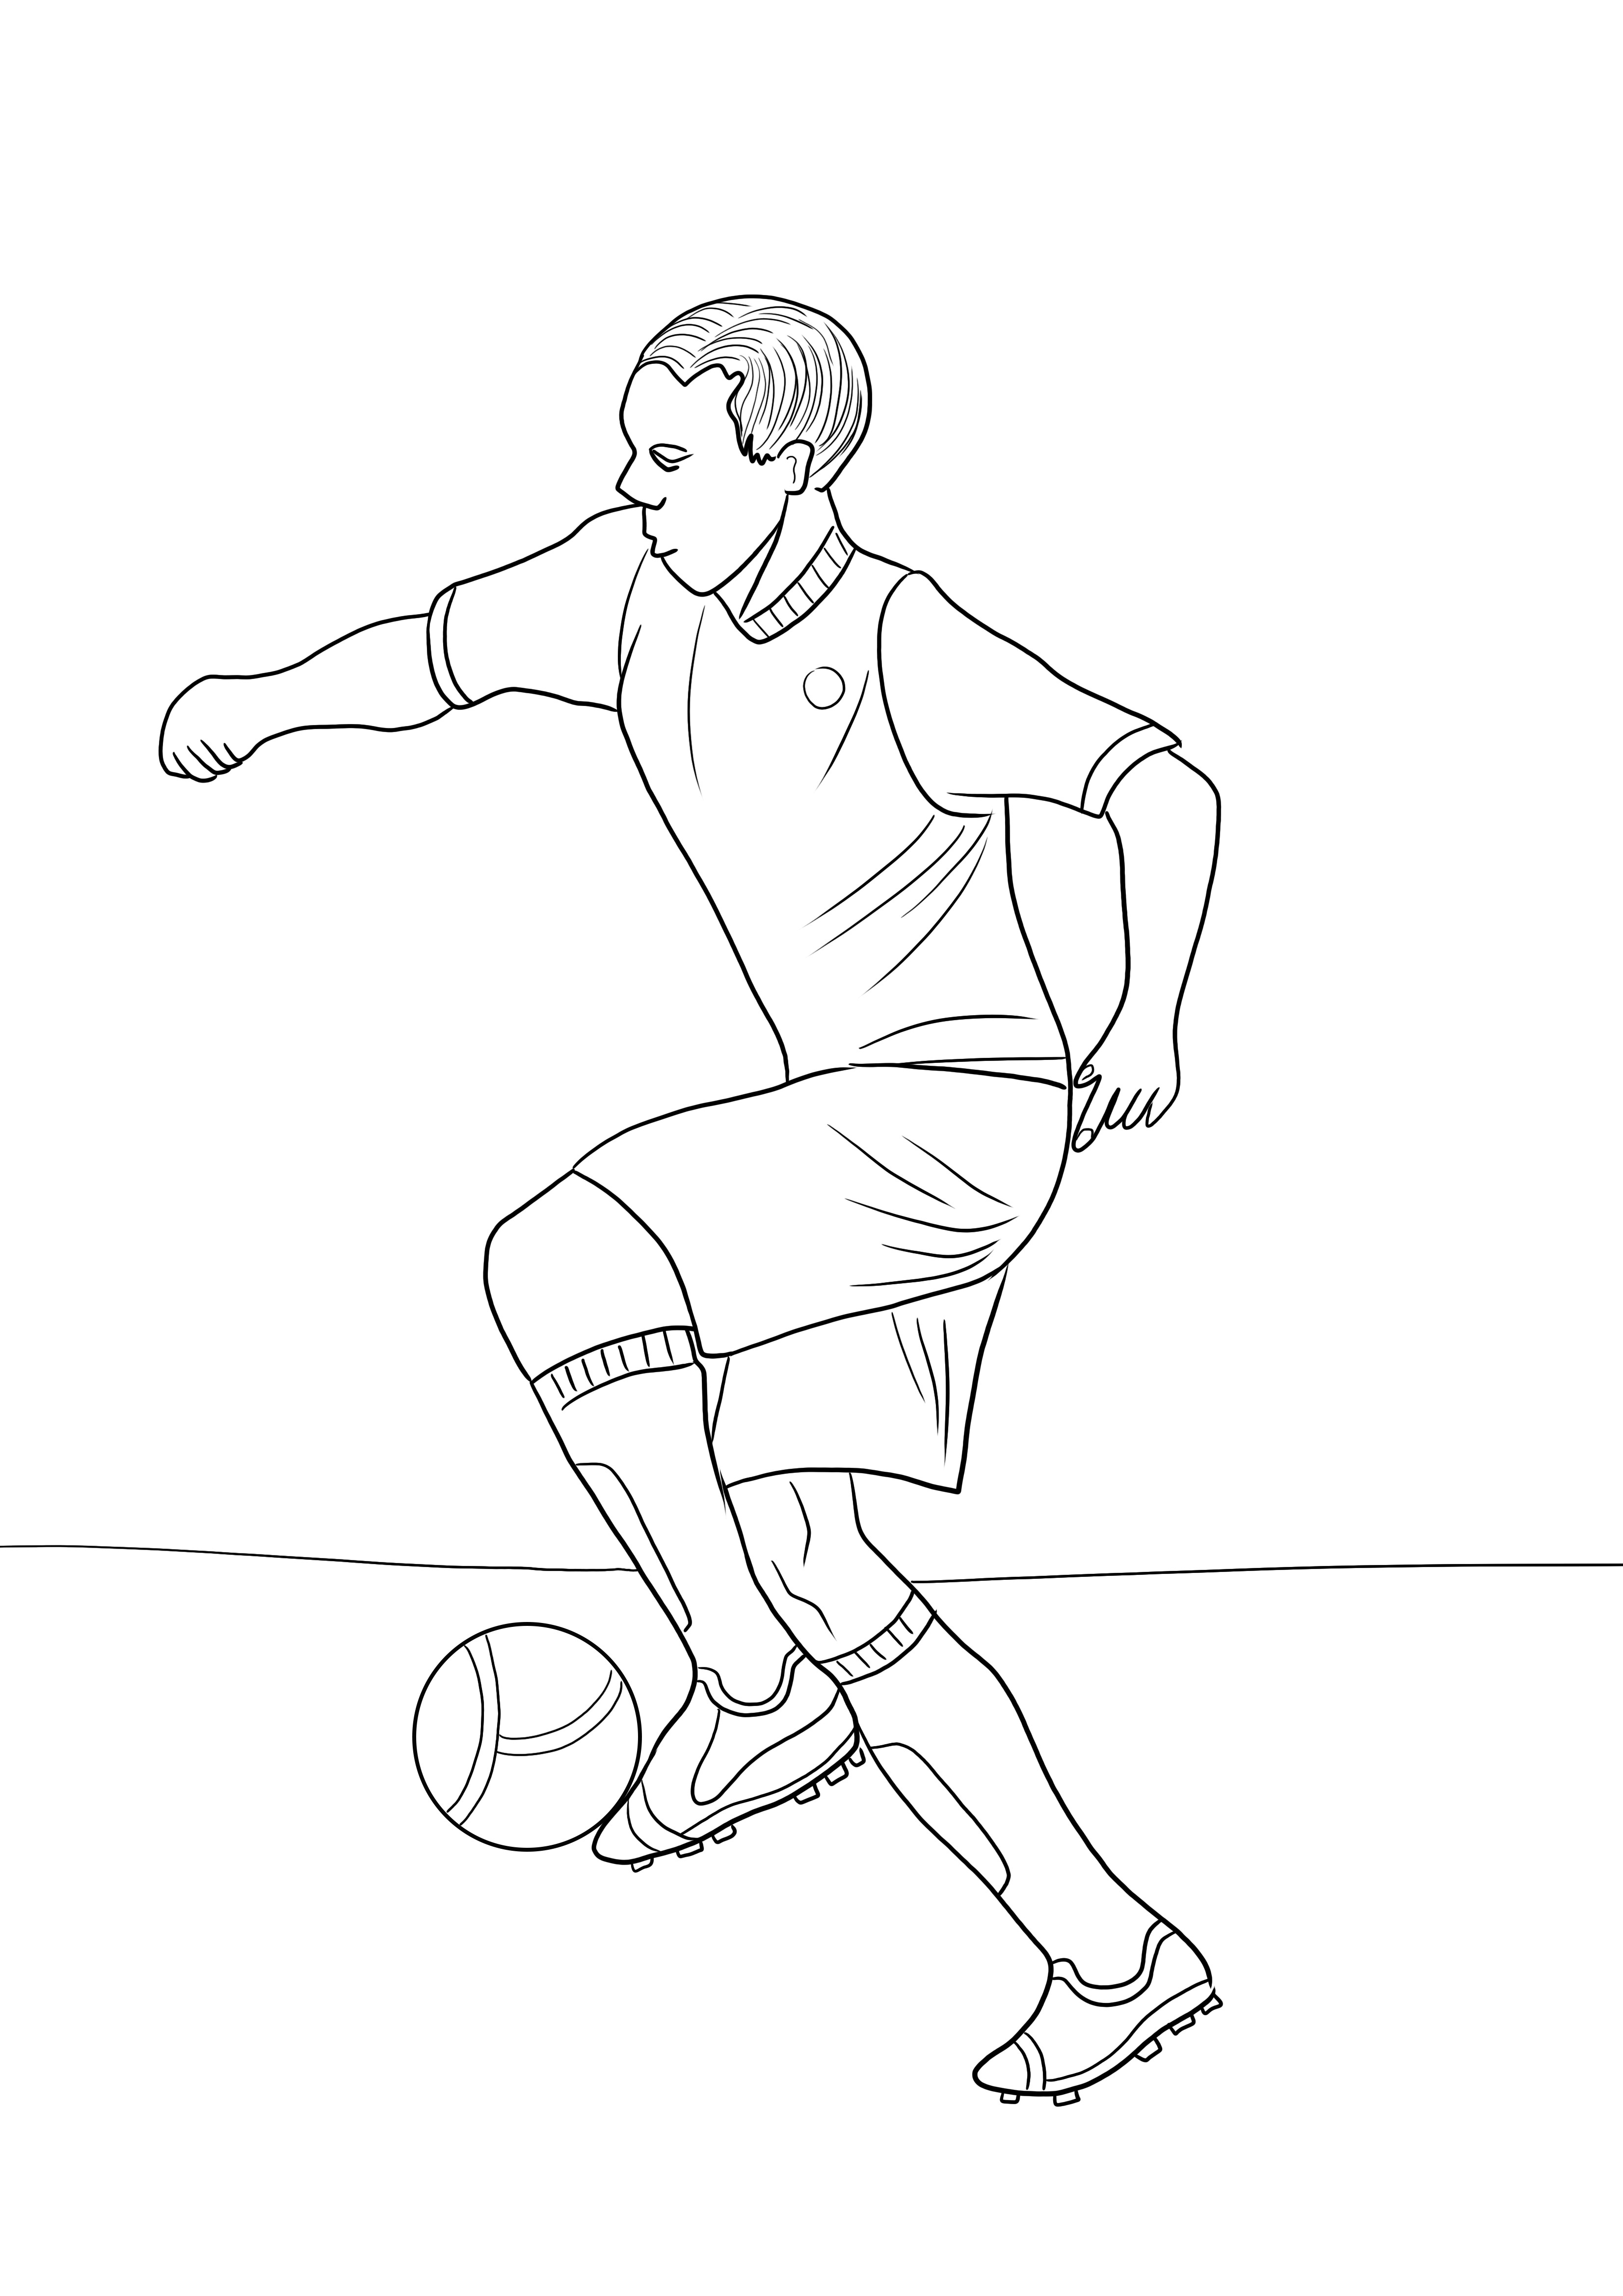 Ingyenesen letölthető és színes kép egy futballistáról a sporttémák egyszerű dőléséhez